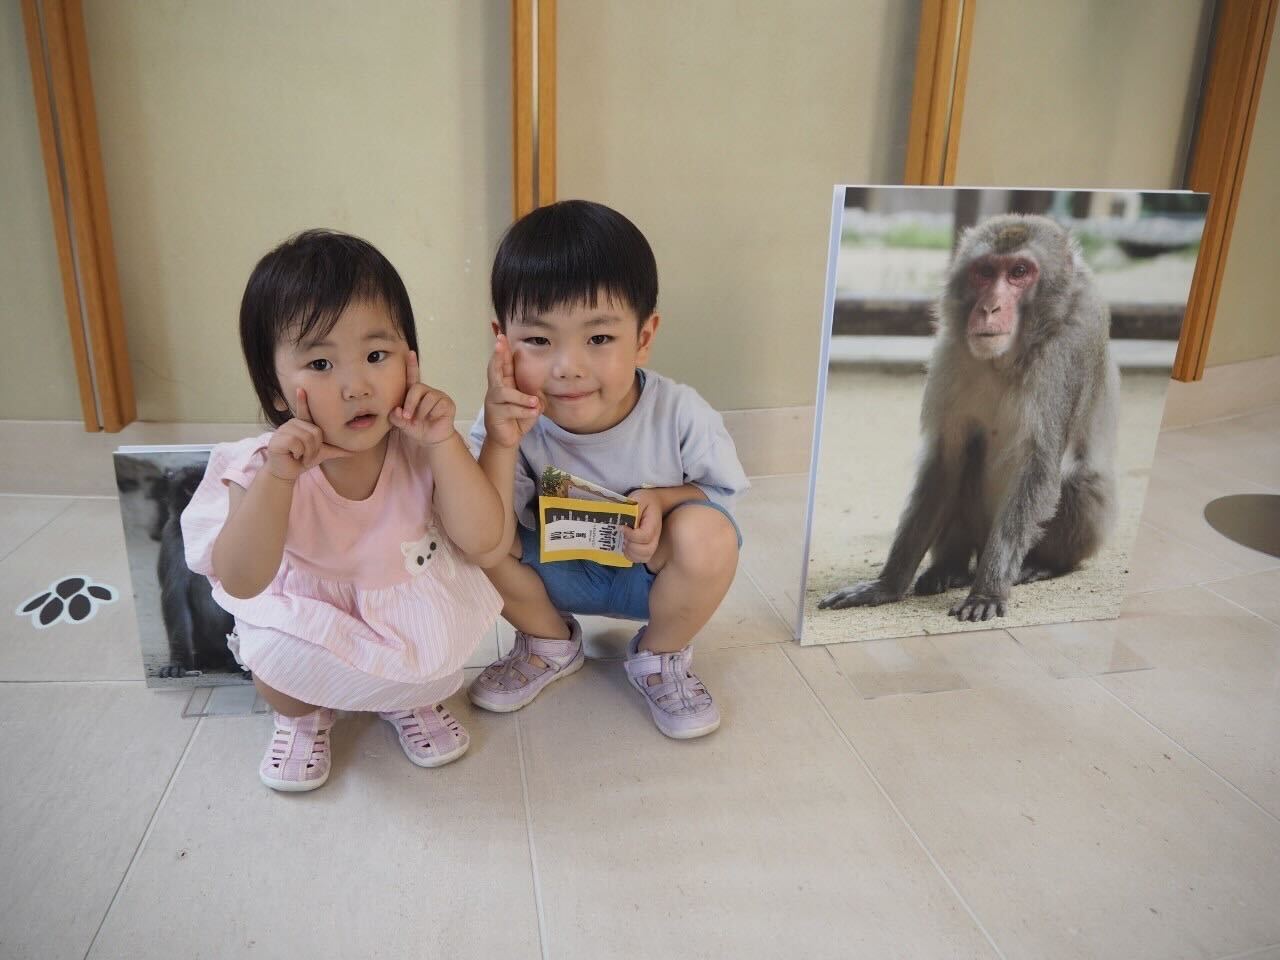 お猿さんの写真と撮影